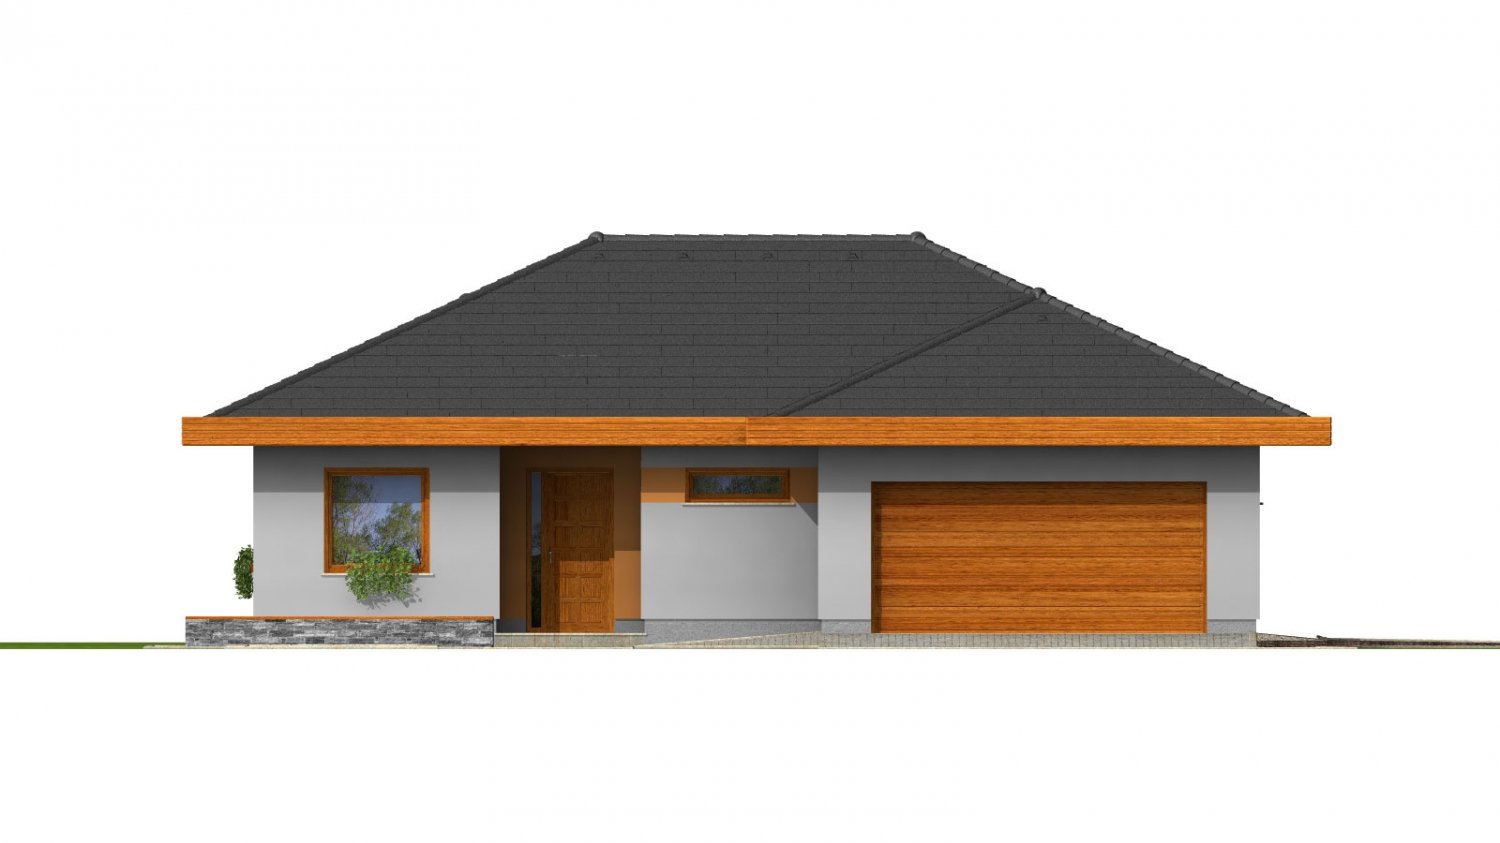 Zrkadlový pohľad 1. - Dům do L s dvojgaráží a valbovou střechou. Možnost realizovat plochou střechu.